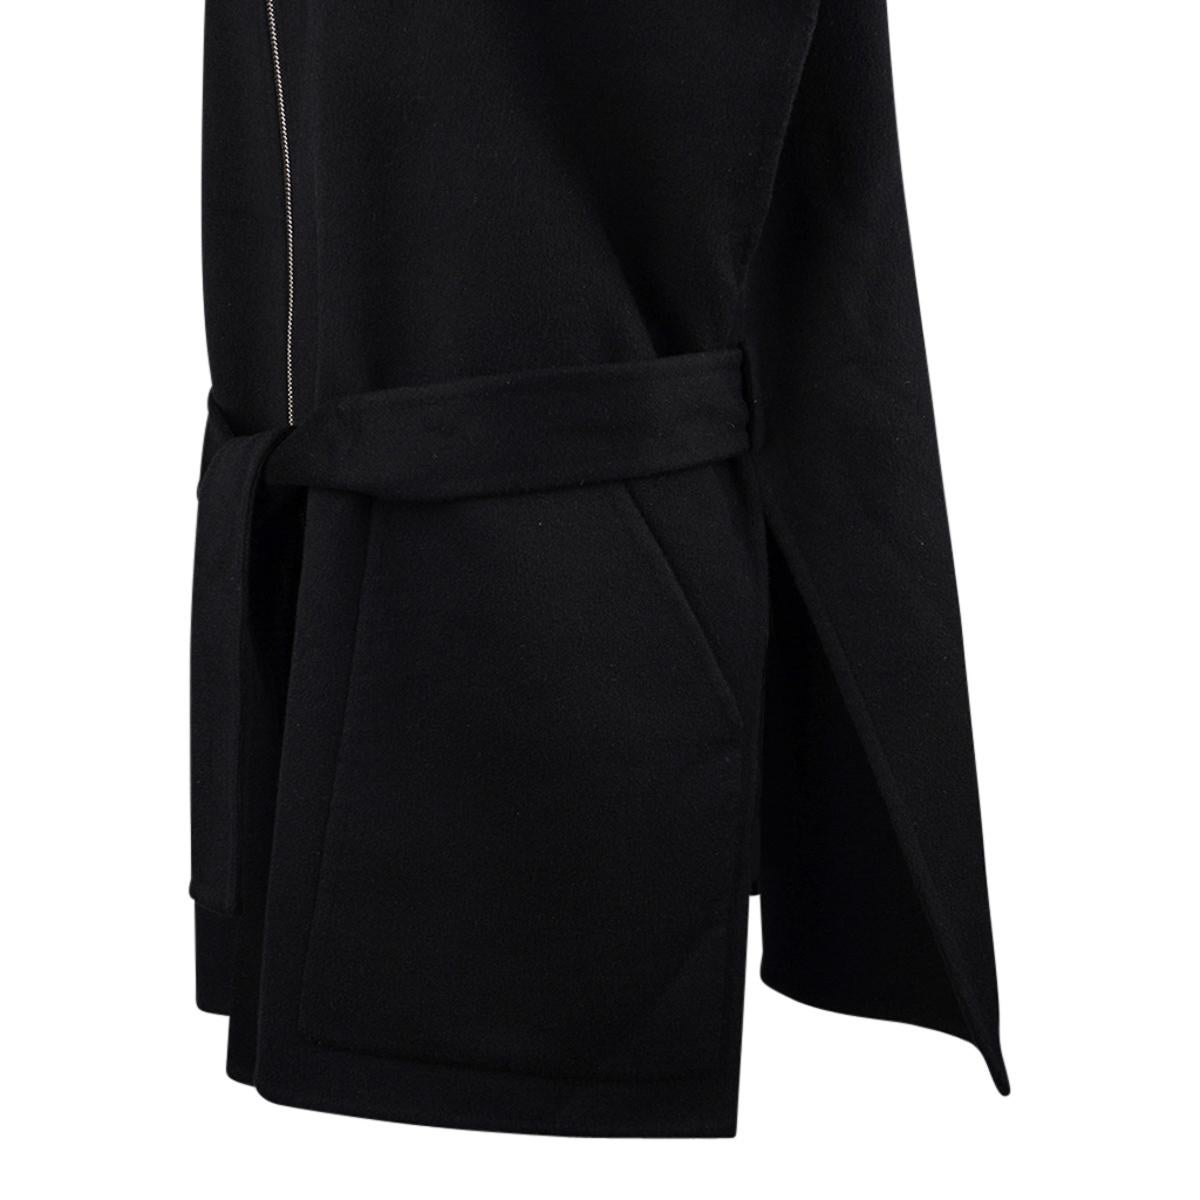 Hermes Short Vest Black Zip Double Face Cashmere 38 / 6 For Sale 5